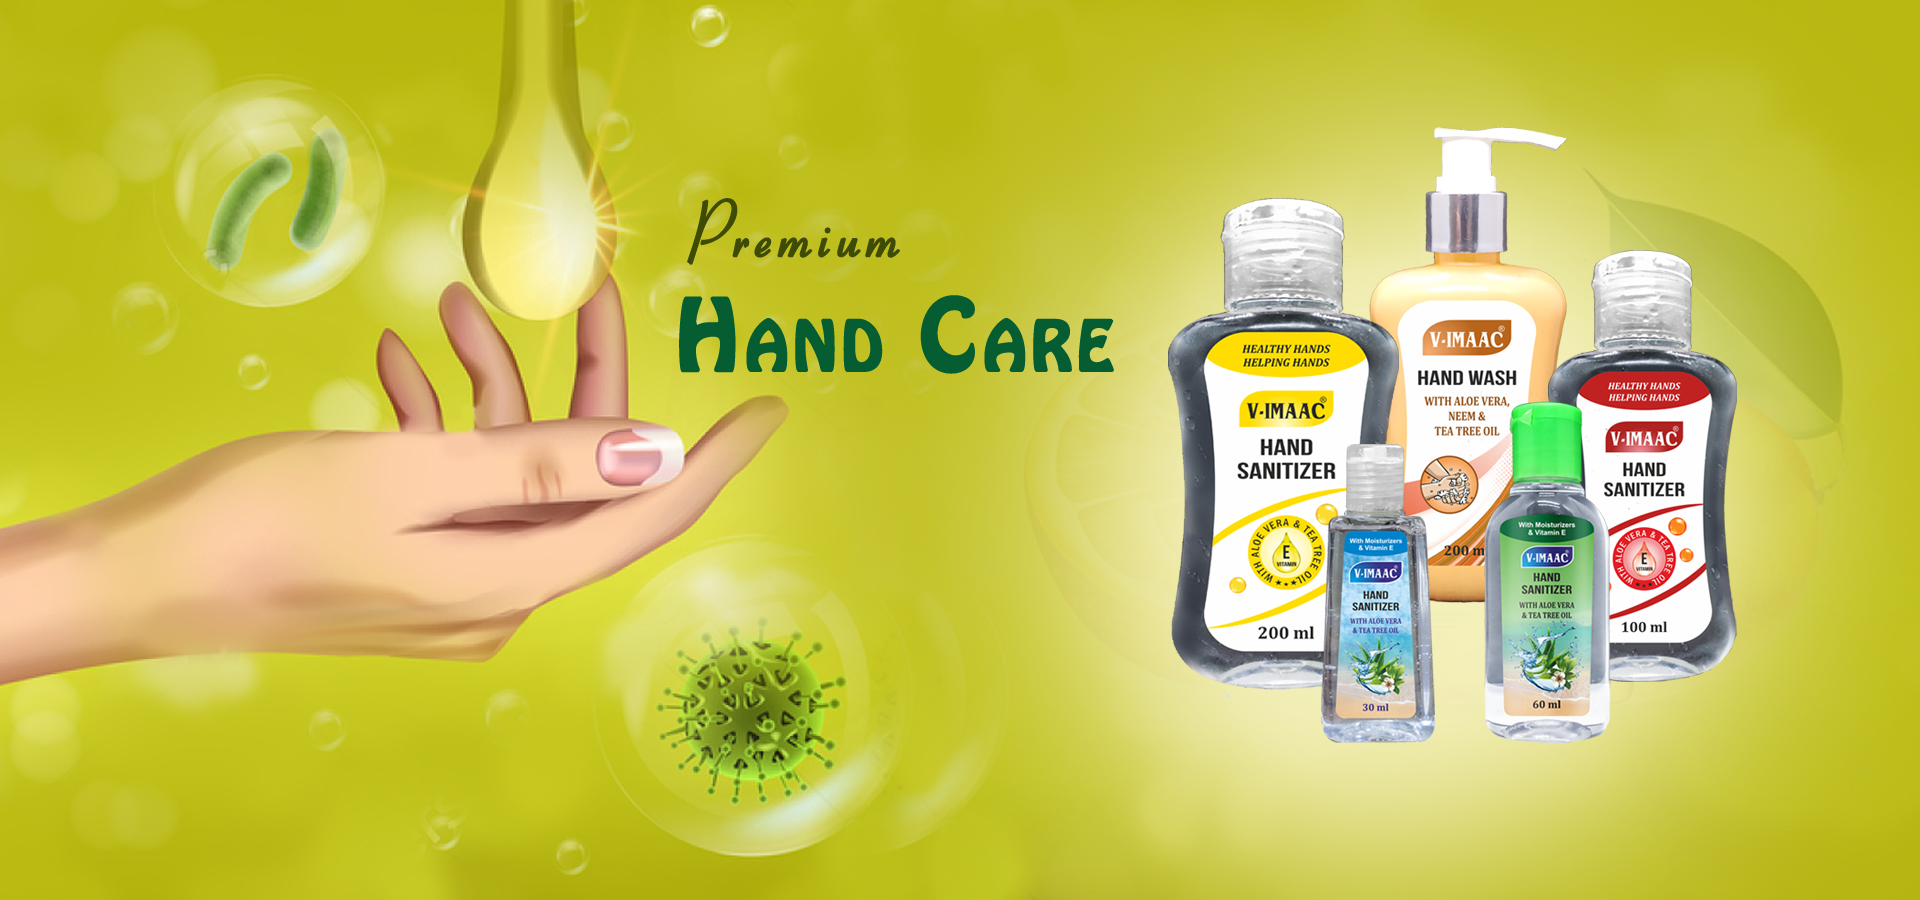 Premium Hand Care